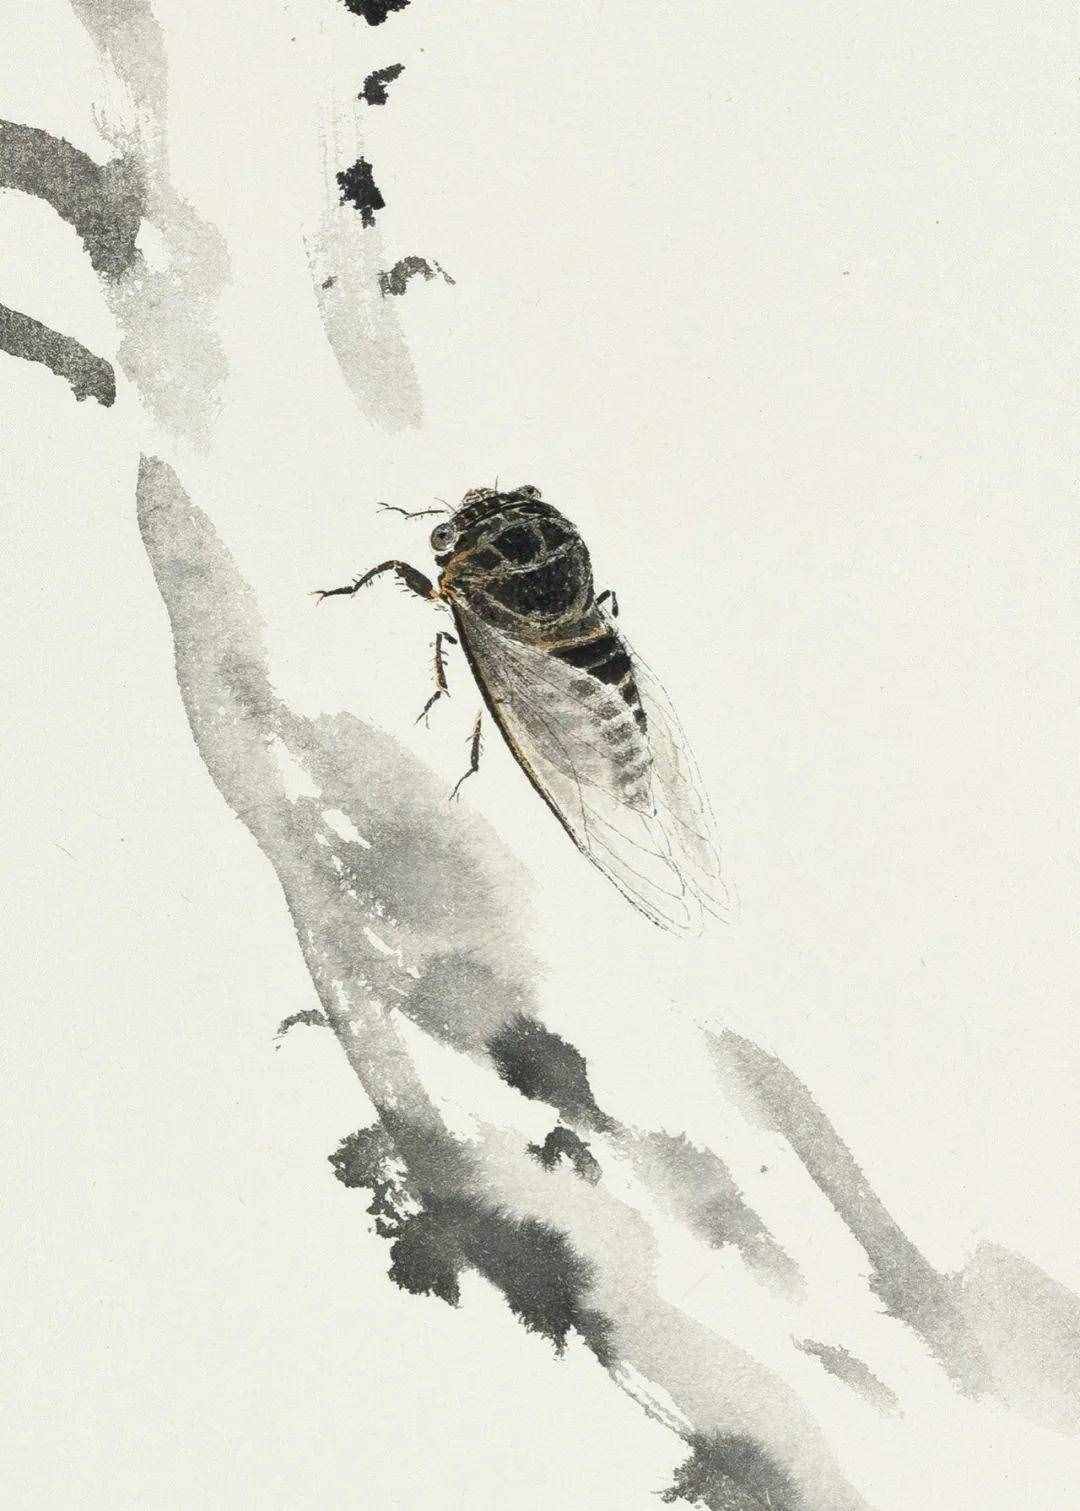 李亚笔下的草虫丨私享·艺术家